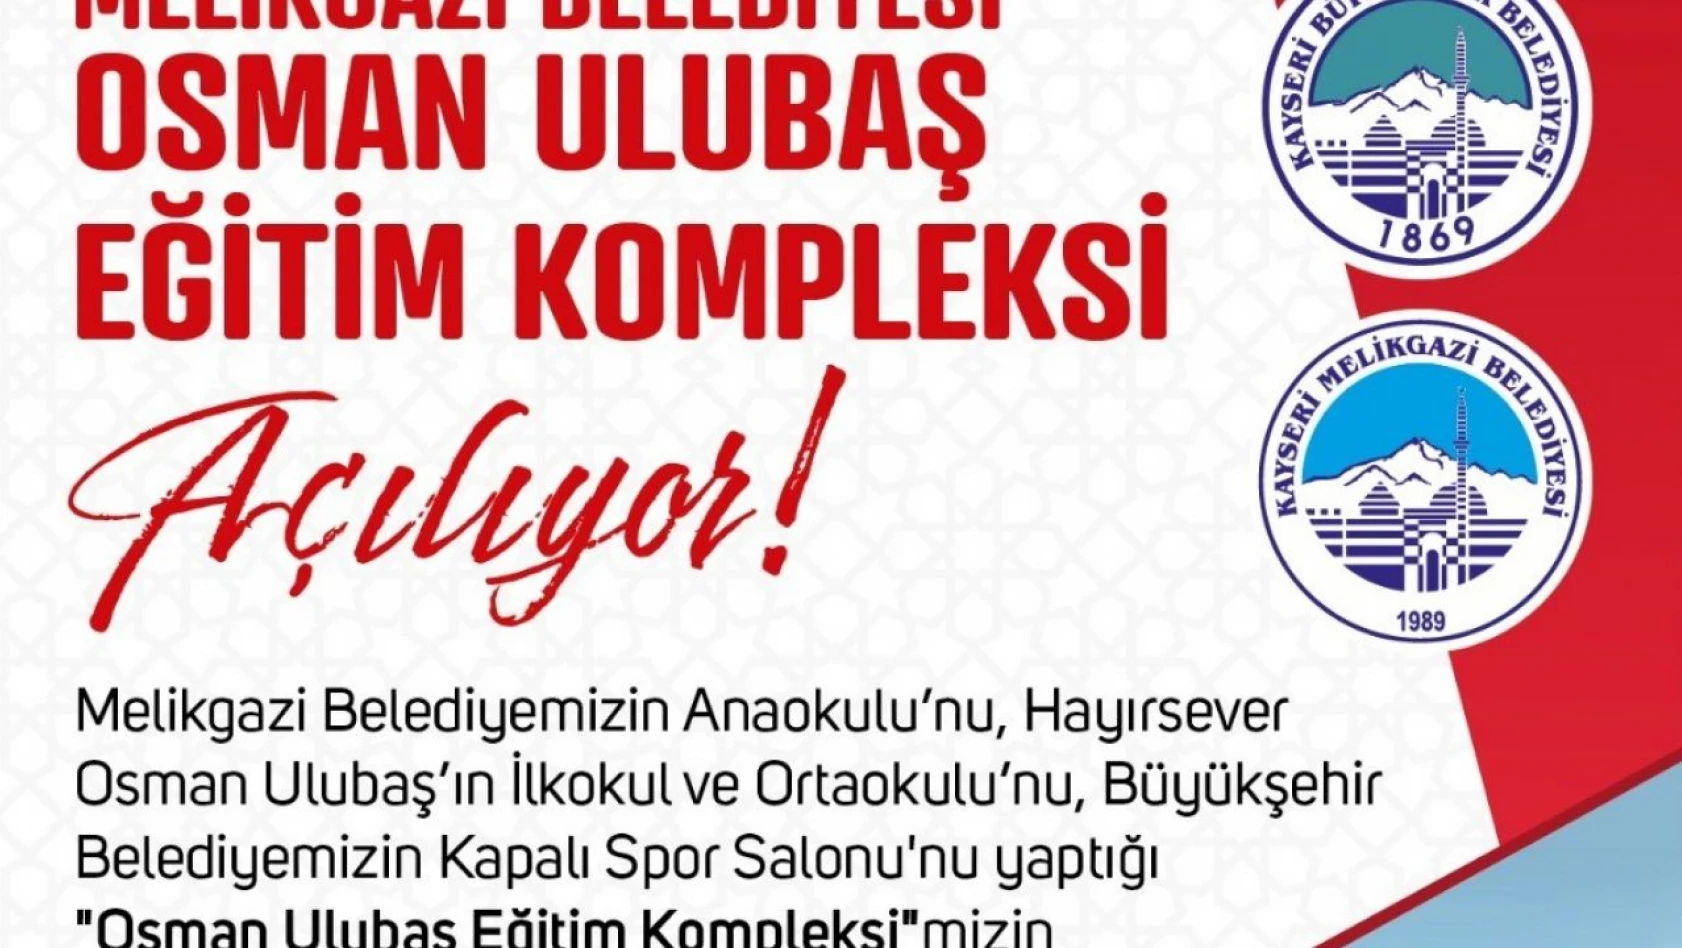 Bakan Özer, Osman Ulubaş Eğitim Kompleksi'nin açılışına katılacak